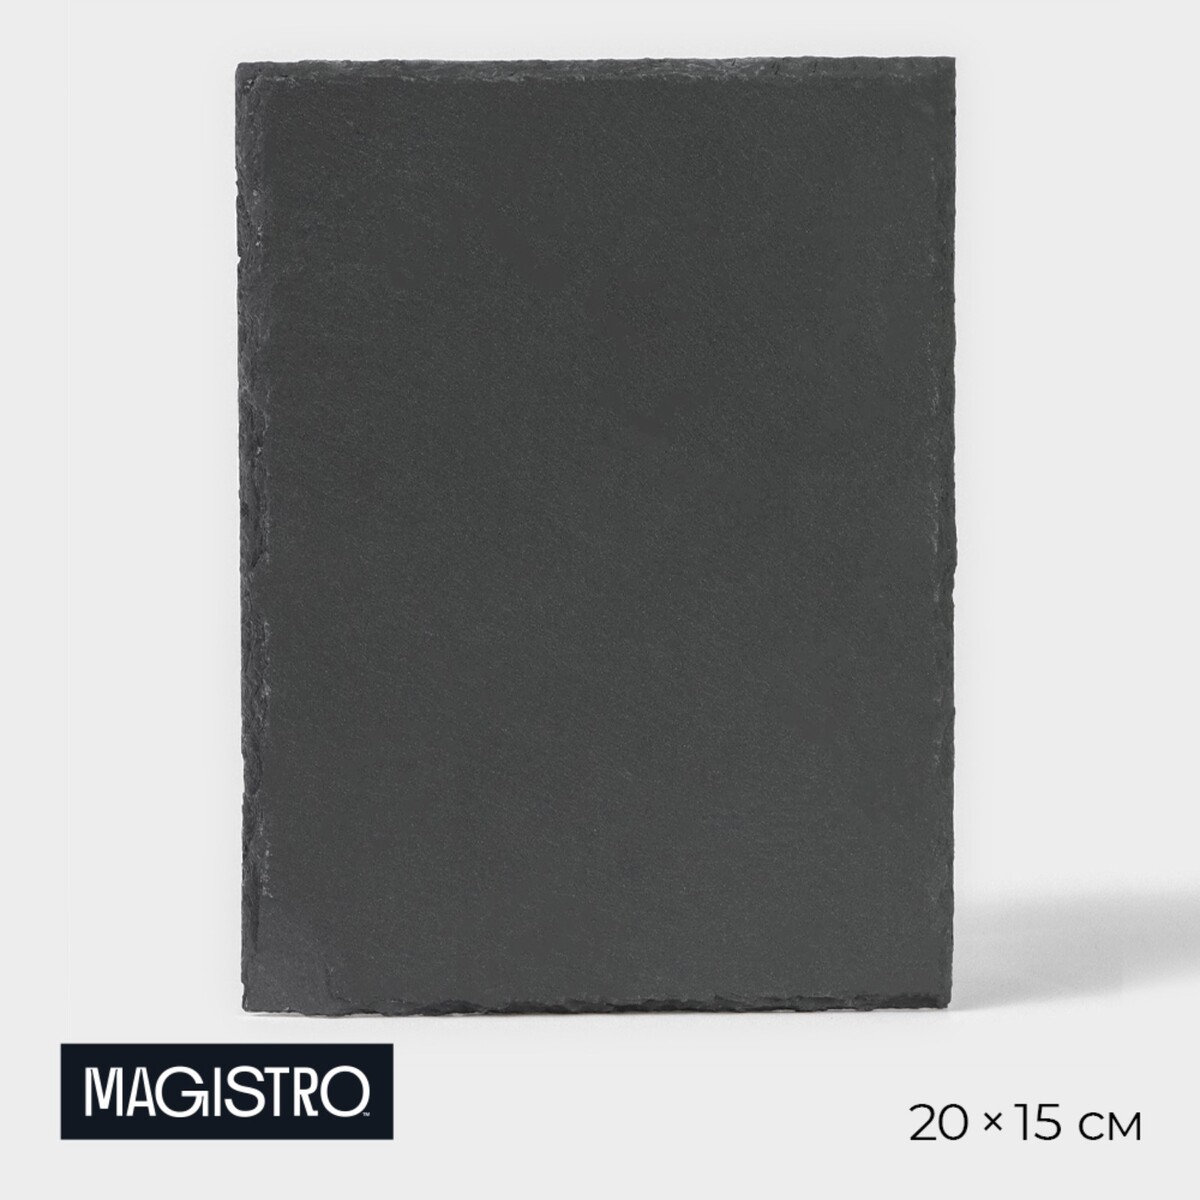 Доска для подачи из сланца magistro valley, 20×15 см доска для подачи magistro valley из сланца 30×29 см в виде сердца